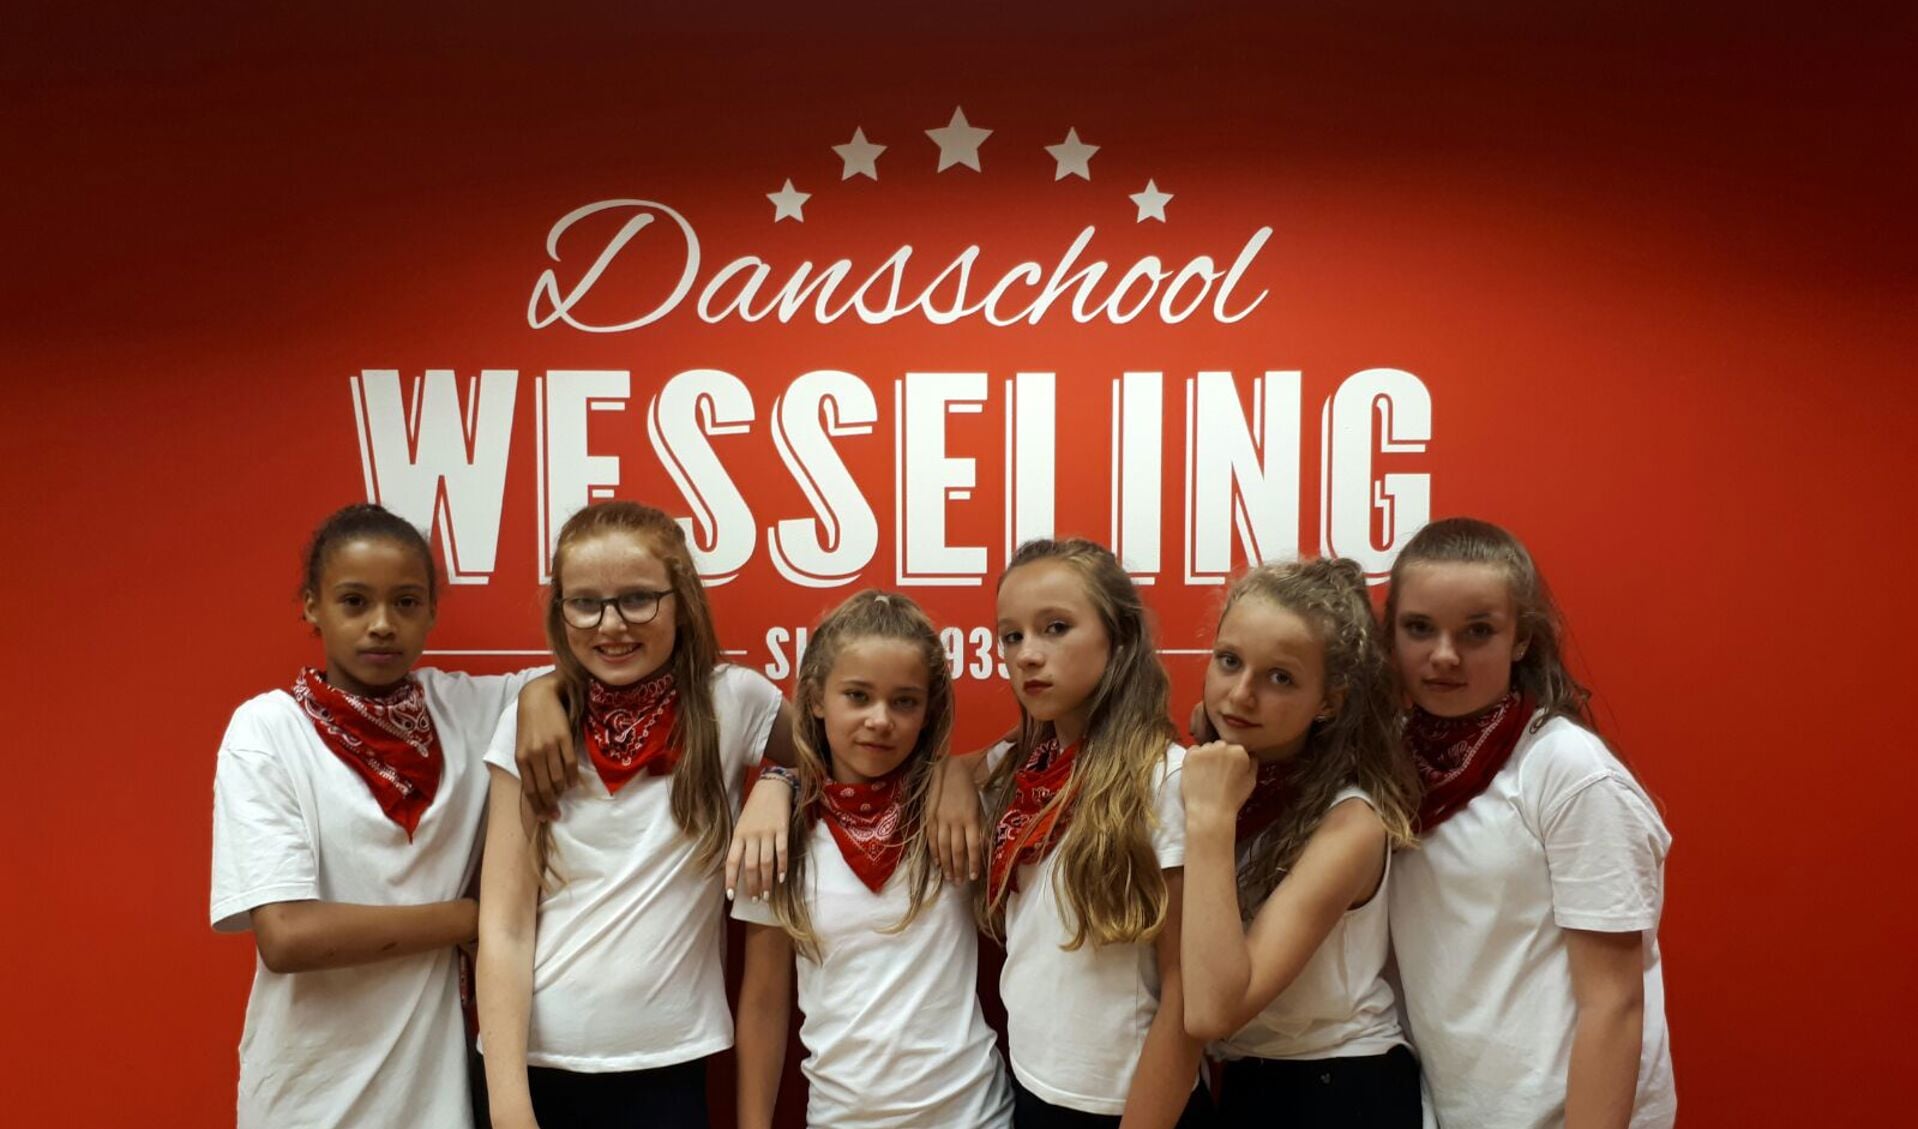 Gratis proeflessen tijdens de open dag van Dansschool Wesseling.